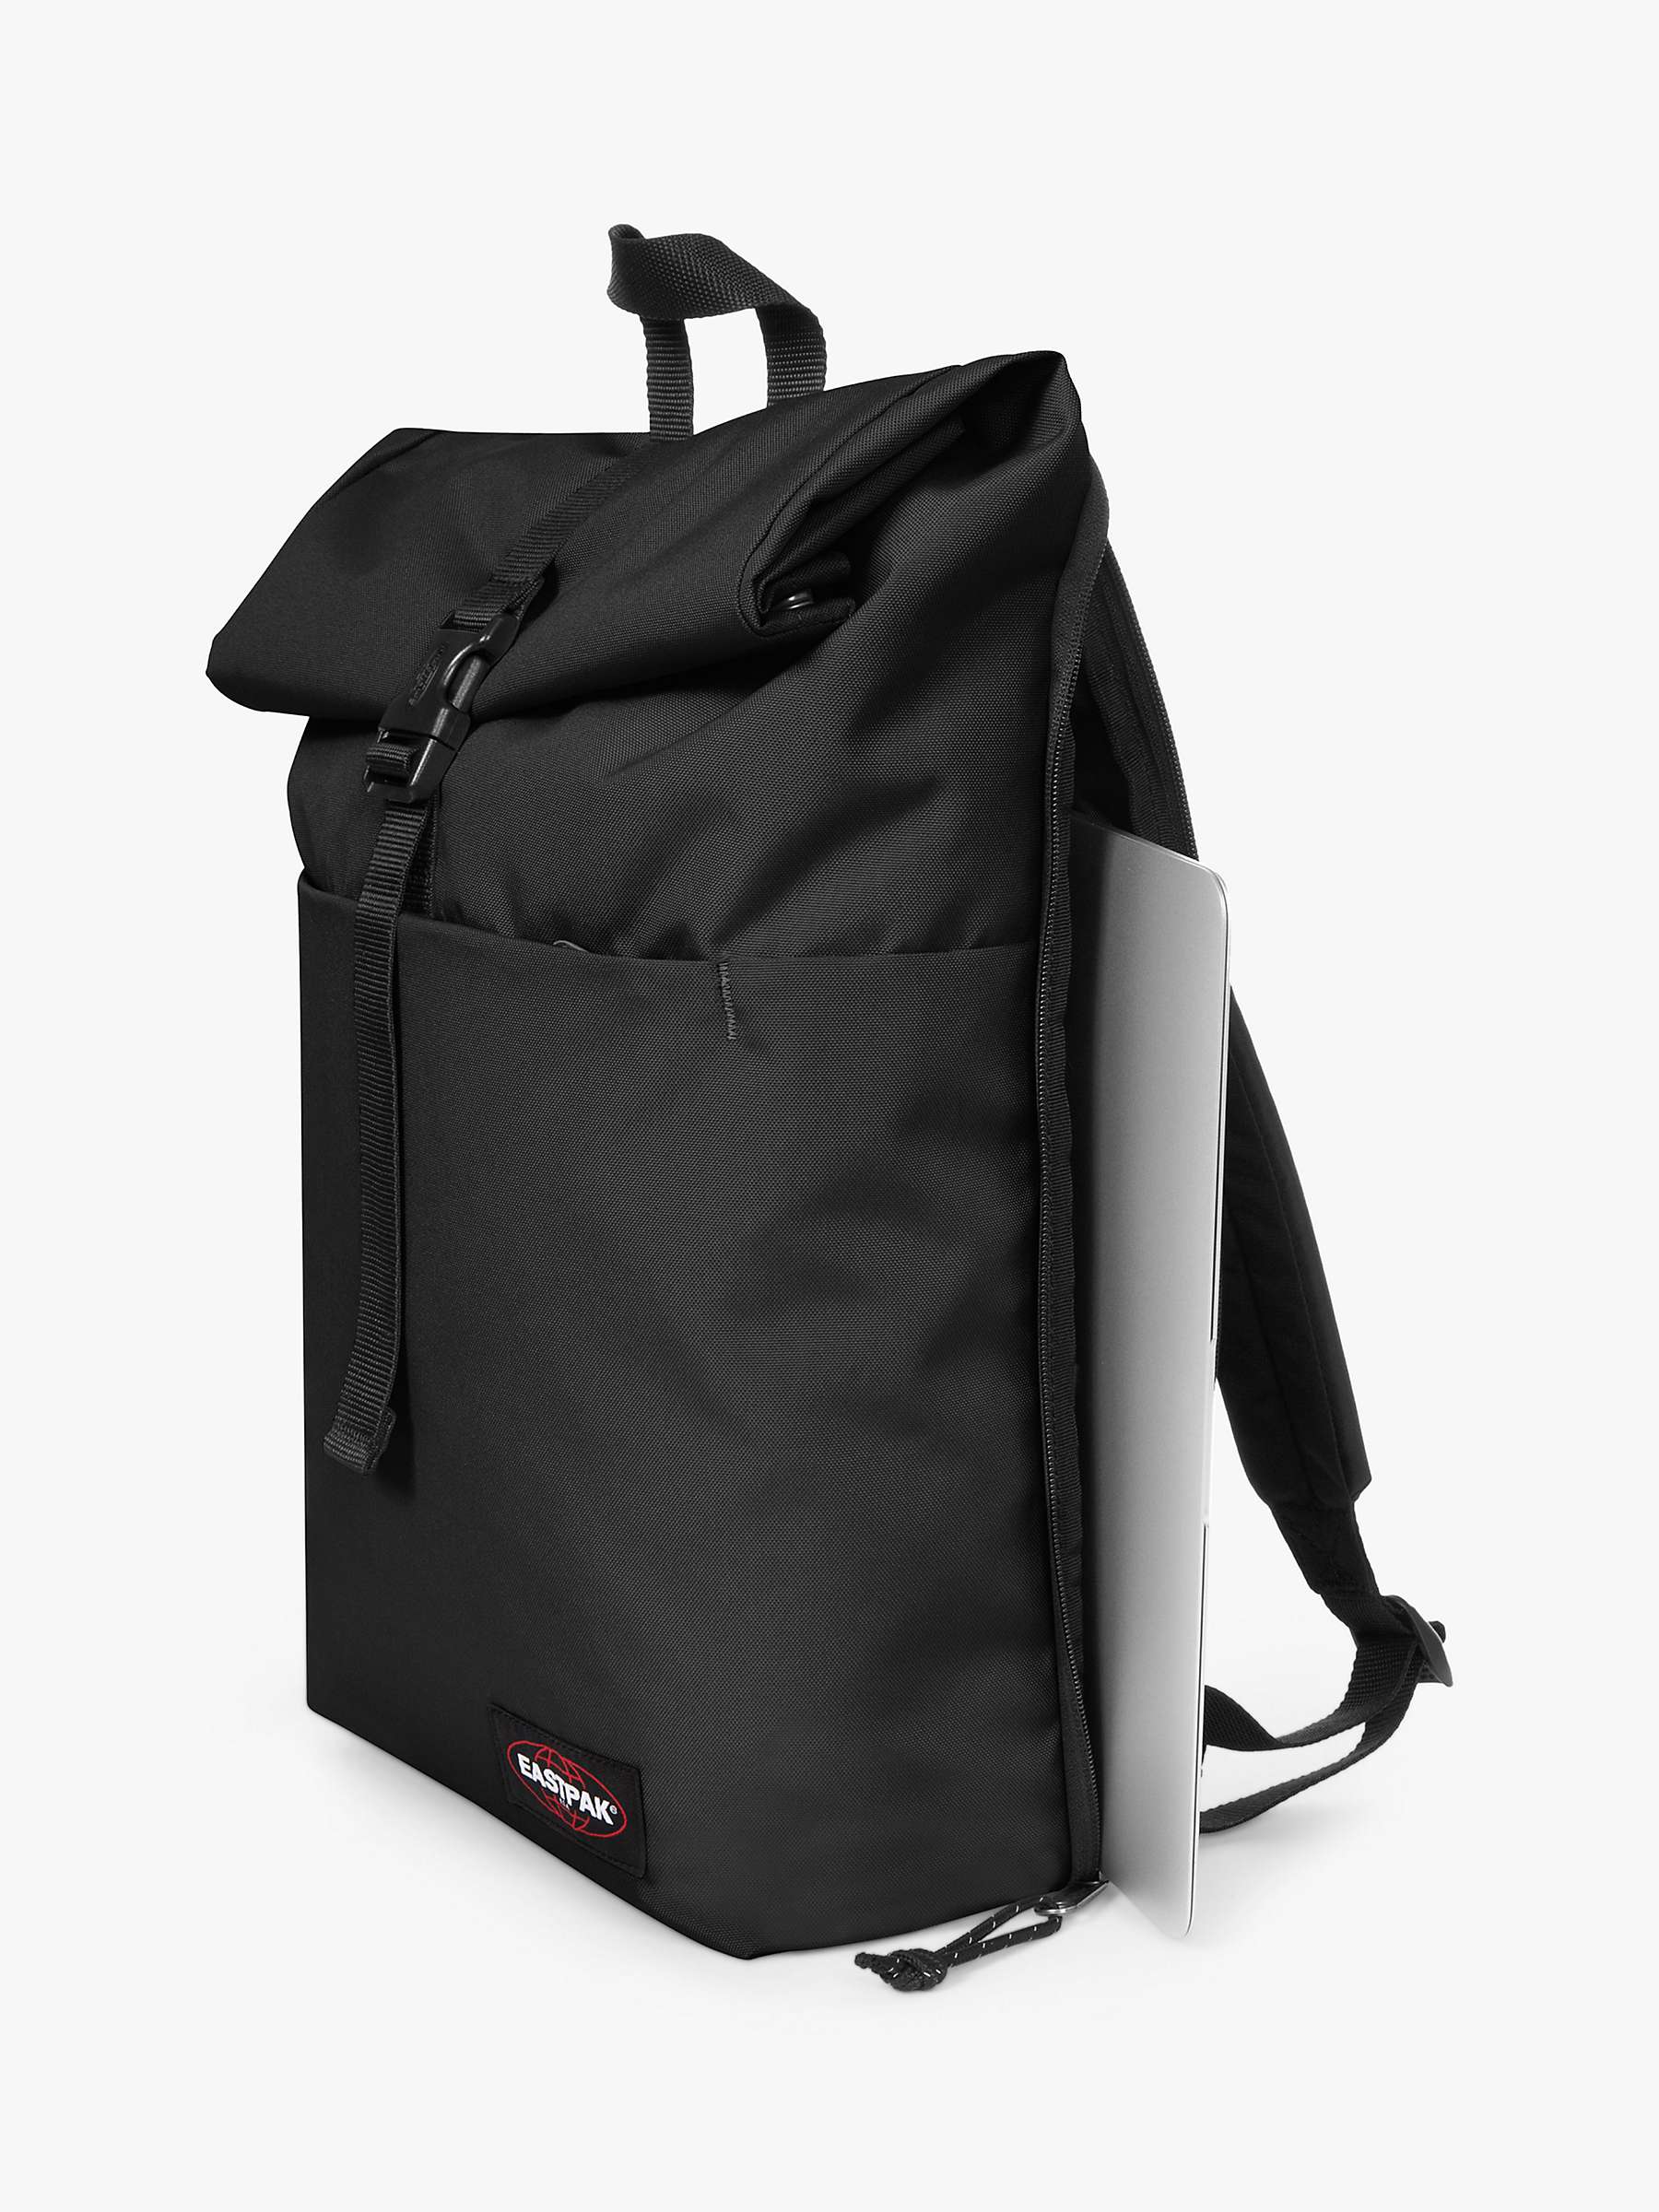 Buy Eastpak Up Roll Backpack Online at johnlewis.com